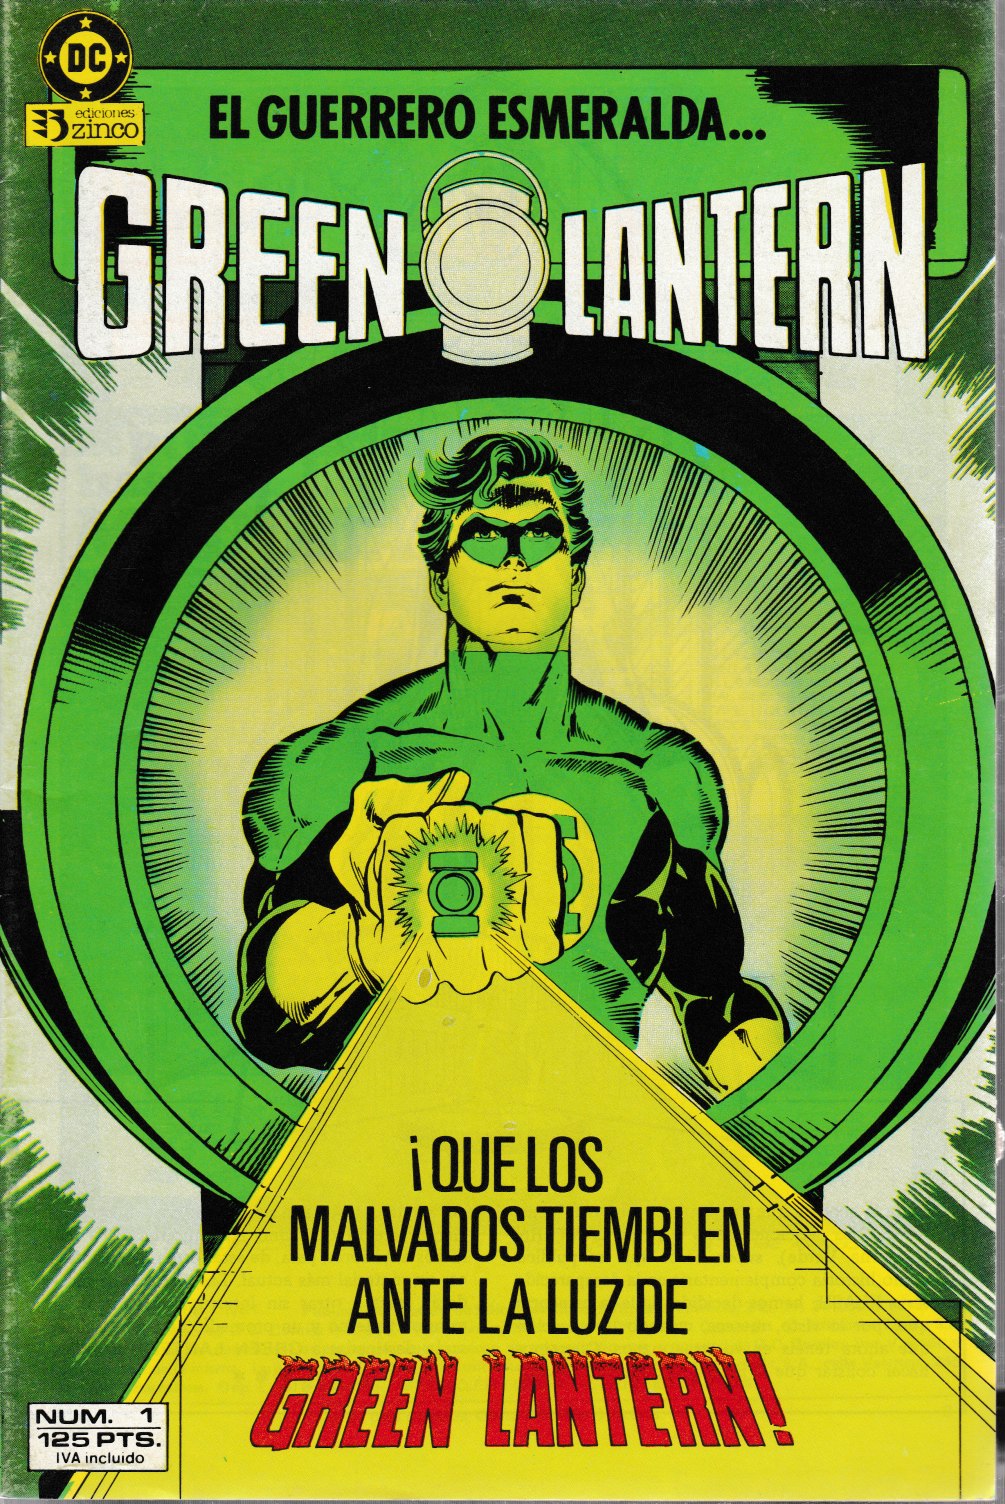 Green Lantern. Zinco 1986. Nº 1